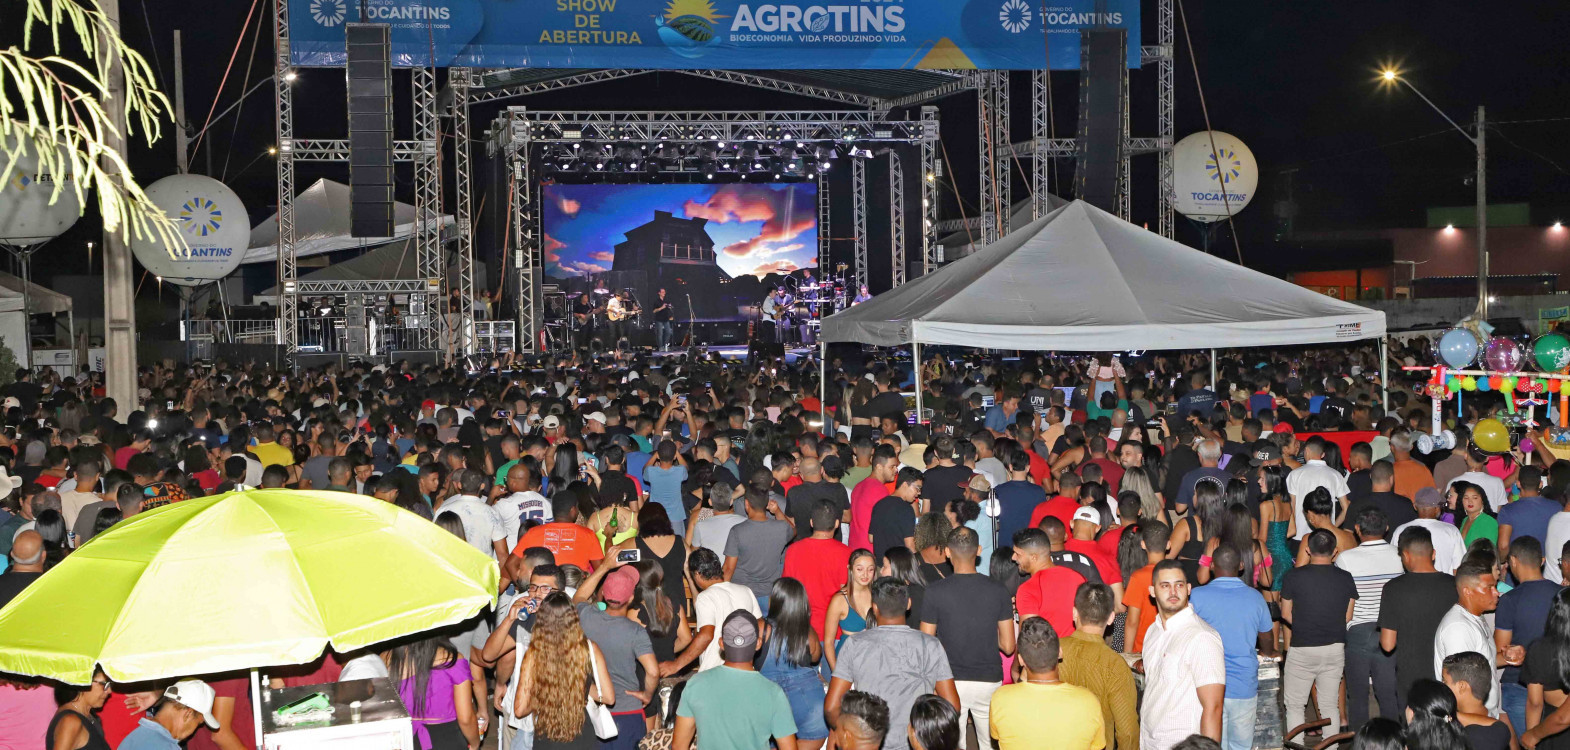 Governador Wanderlei Barbosa lança oficialmente a Agrotins 2024 com shows nacionais nessa quinta-feira, 9